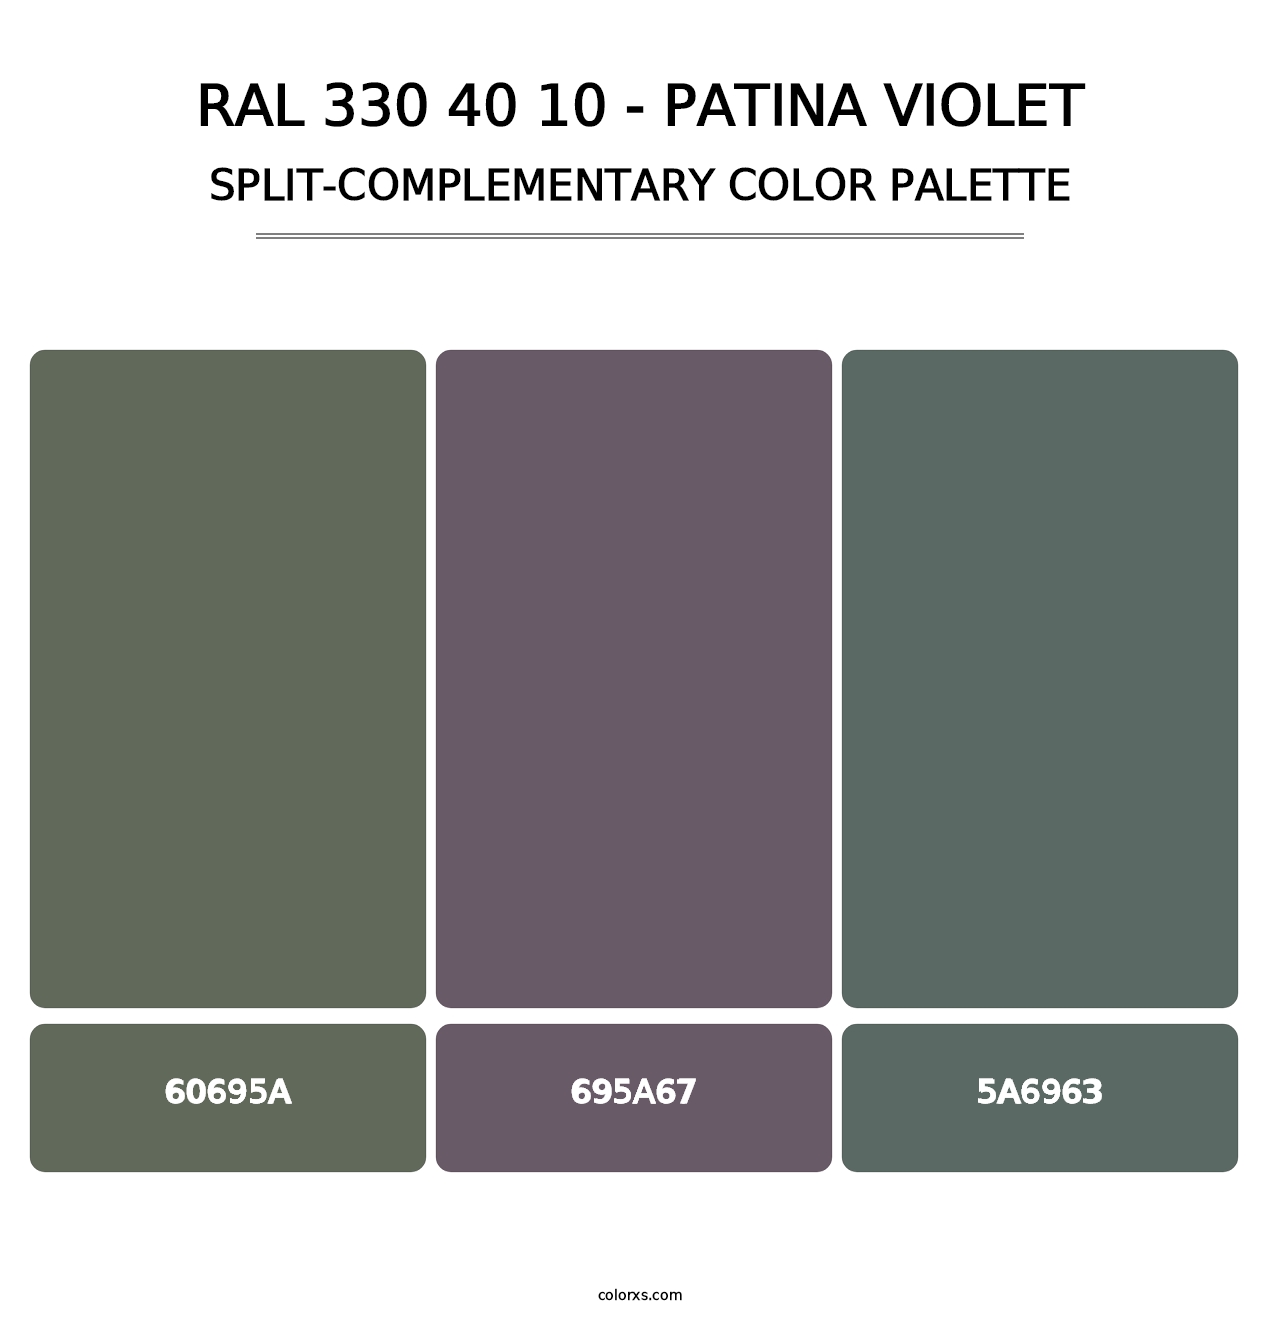 RAL 330 40 10 - Patina Violet - Split-Complementary Color Palette